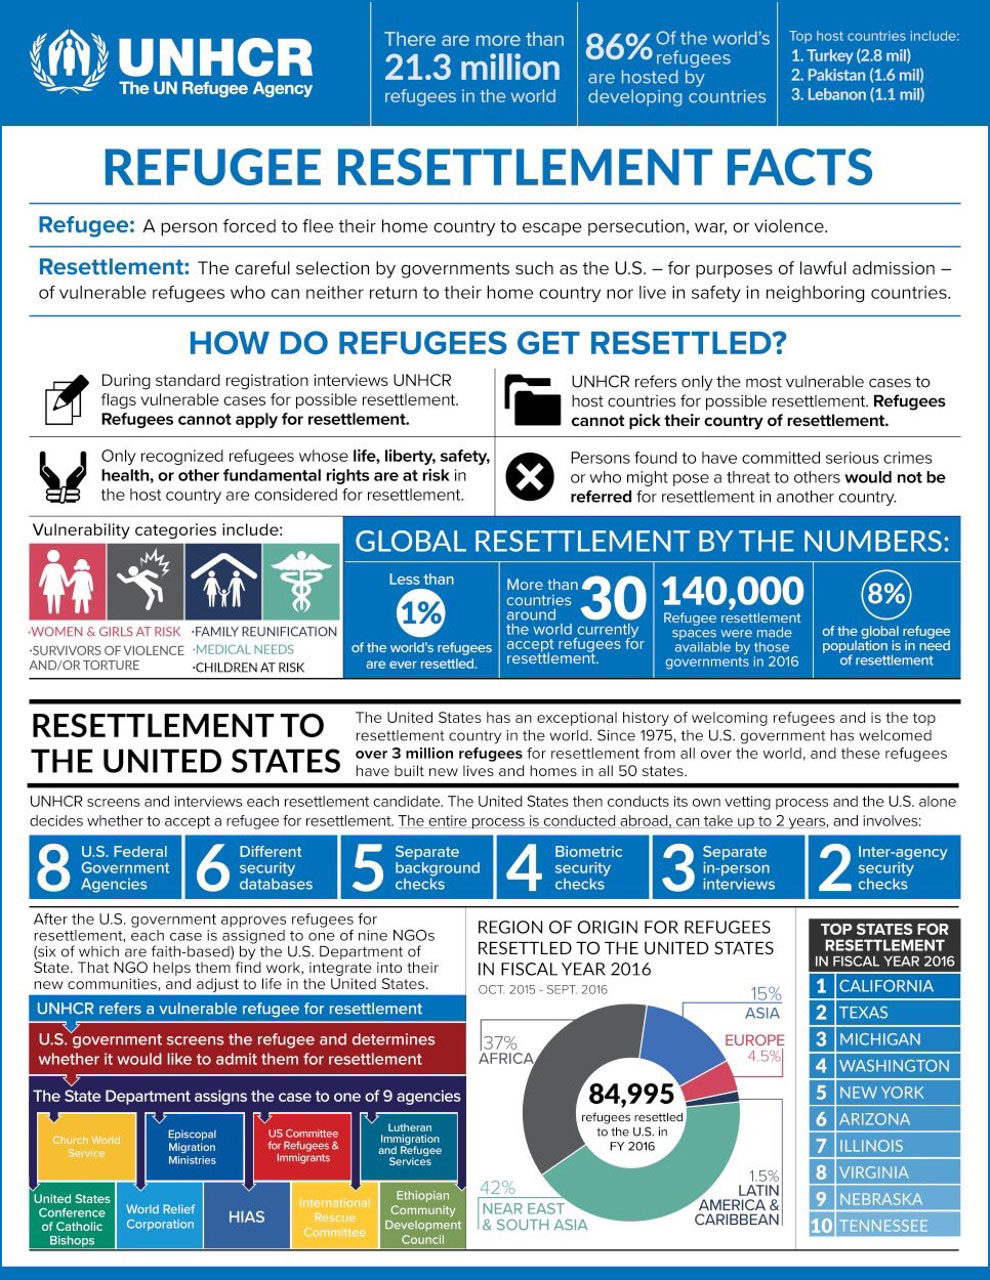  UN Refugee Agency (UNHCR